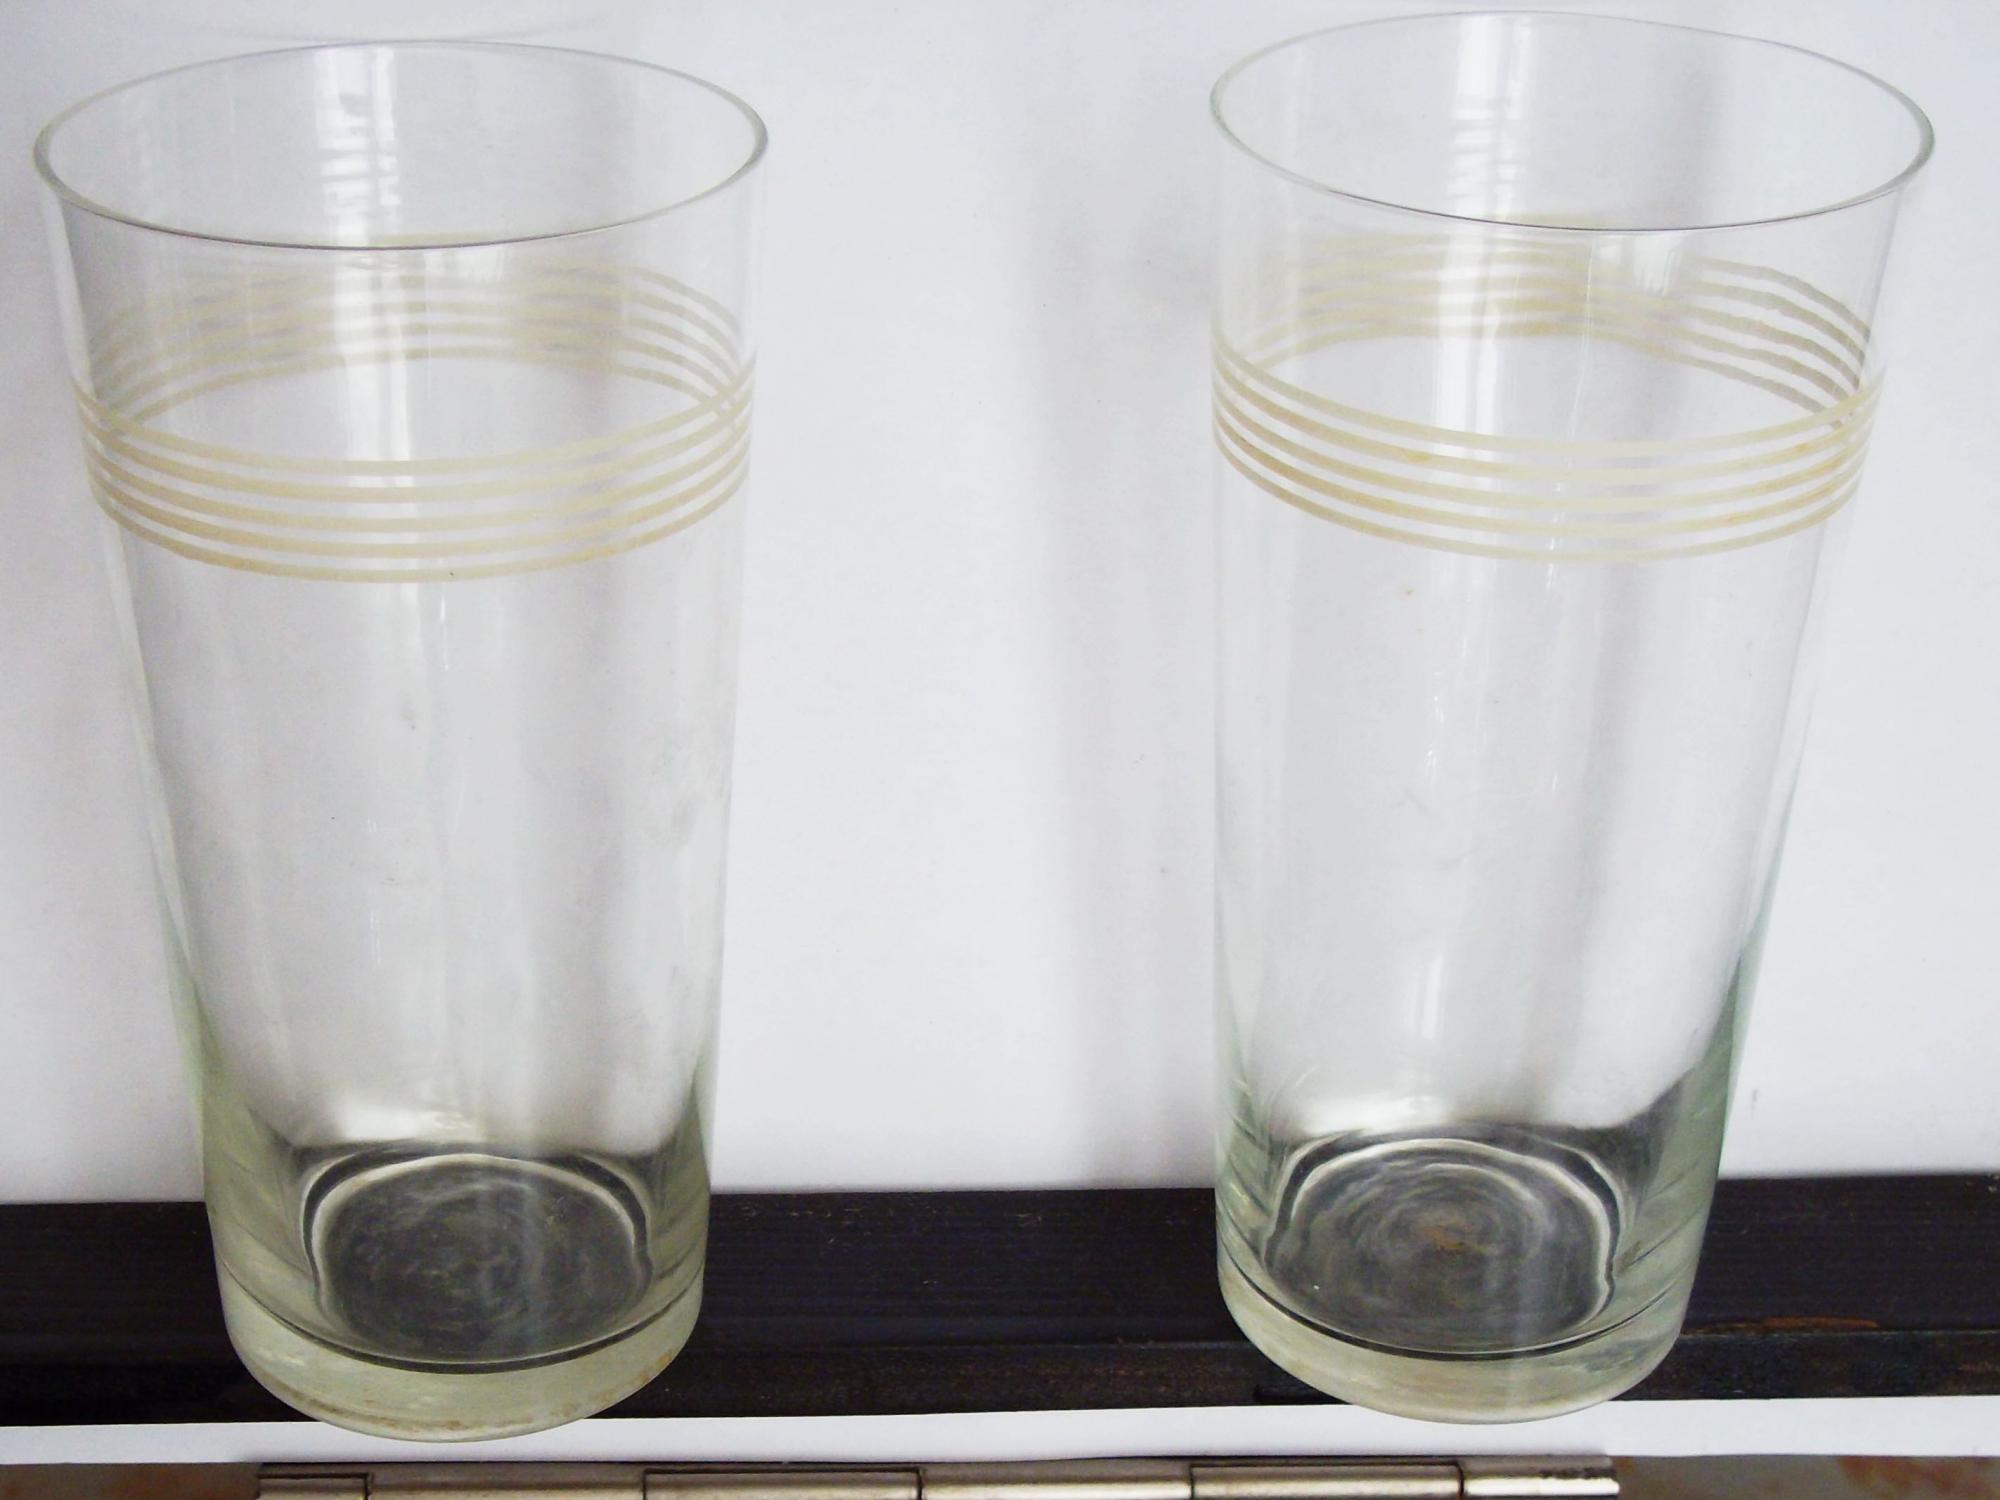 Стакан тонкостенный с41008. Советский стакан. Тонкостенные стаканы СССР. Тонкостенные стаканы высокие. Имеются четыре одинаковых стакана